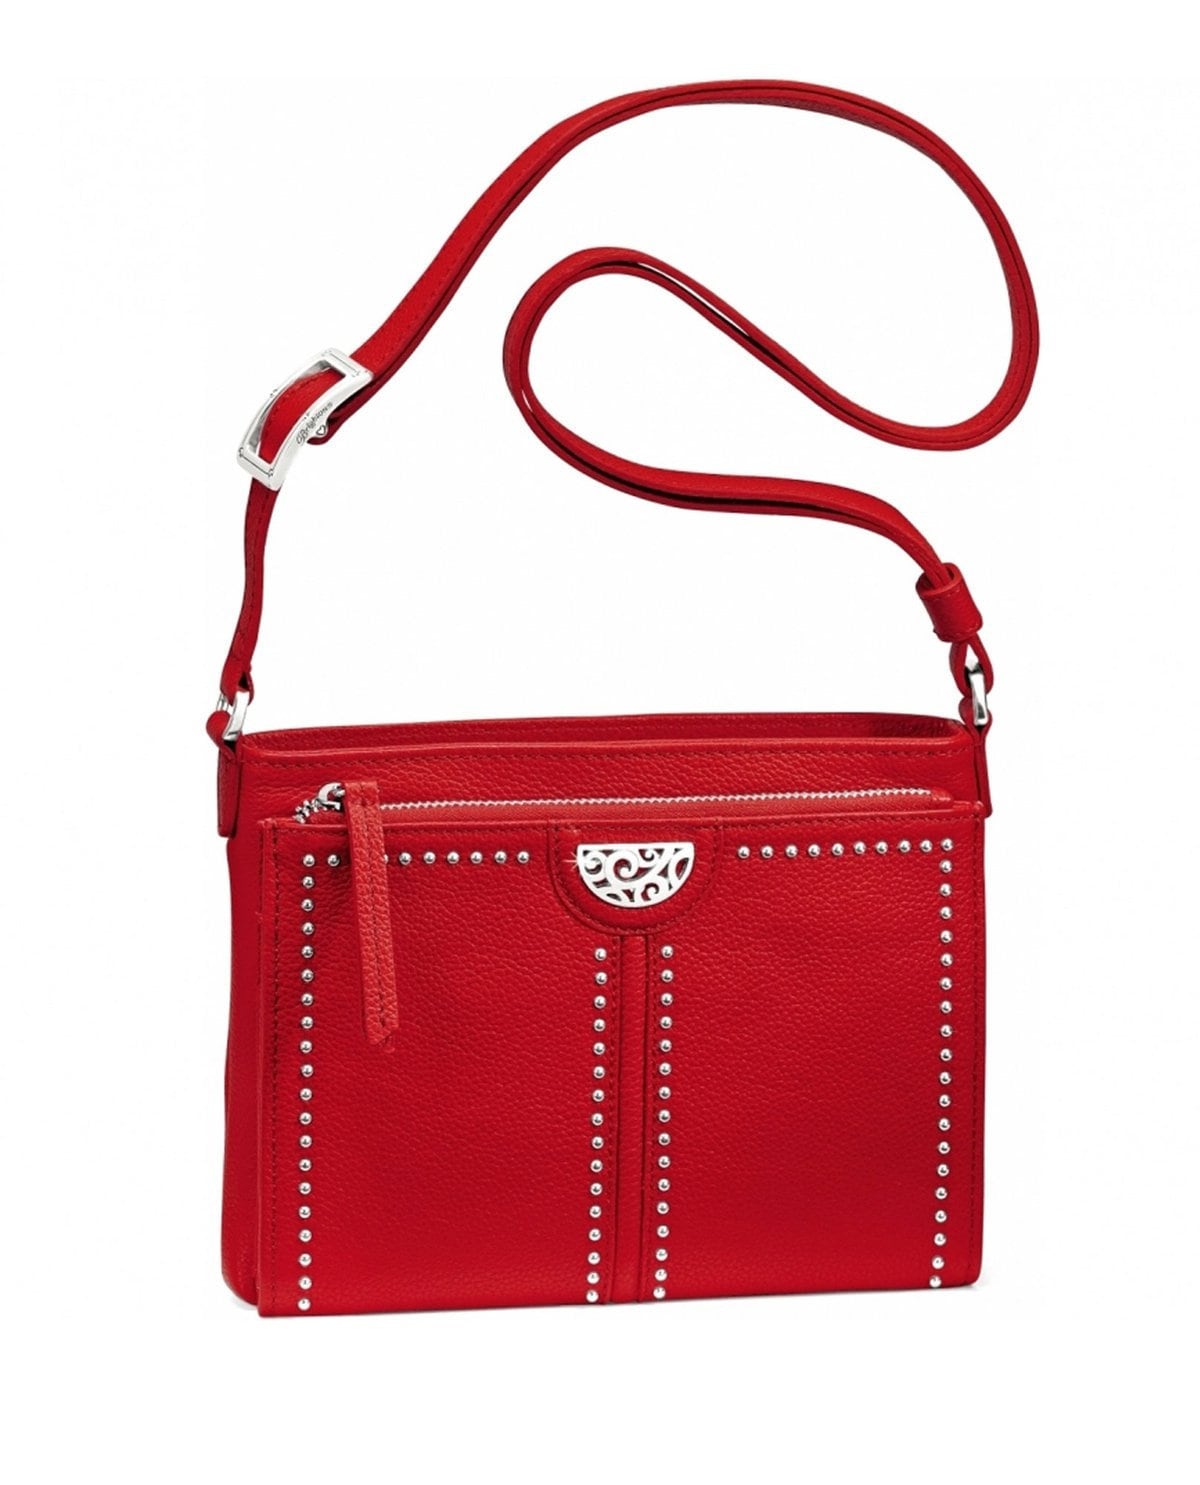 Brighton Croc Leather Red Shoulder Bag Silver Hardware Hearts | Red  shoulder bags, Croc leather, Shoulder bag